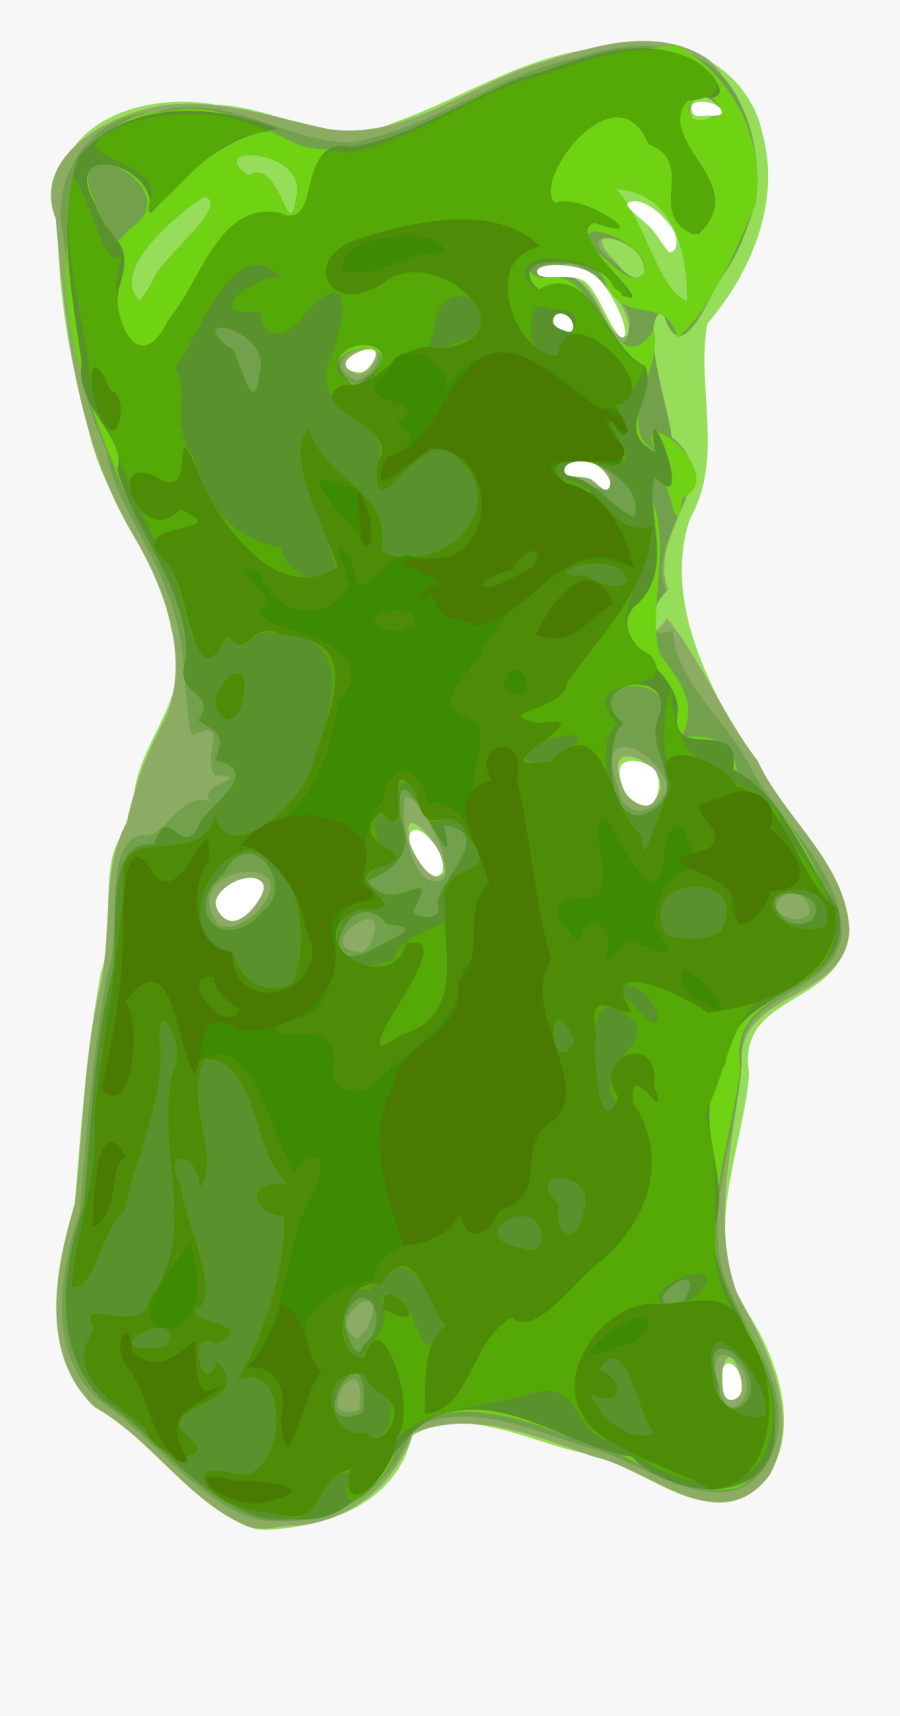 Microsoft Clipart Halloween - Green Gummy Bear Png, Transparent Clipart